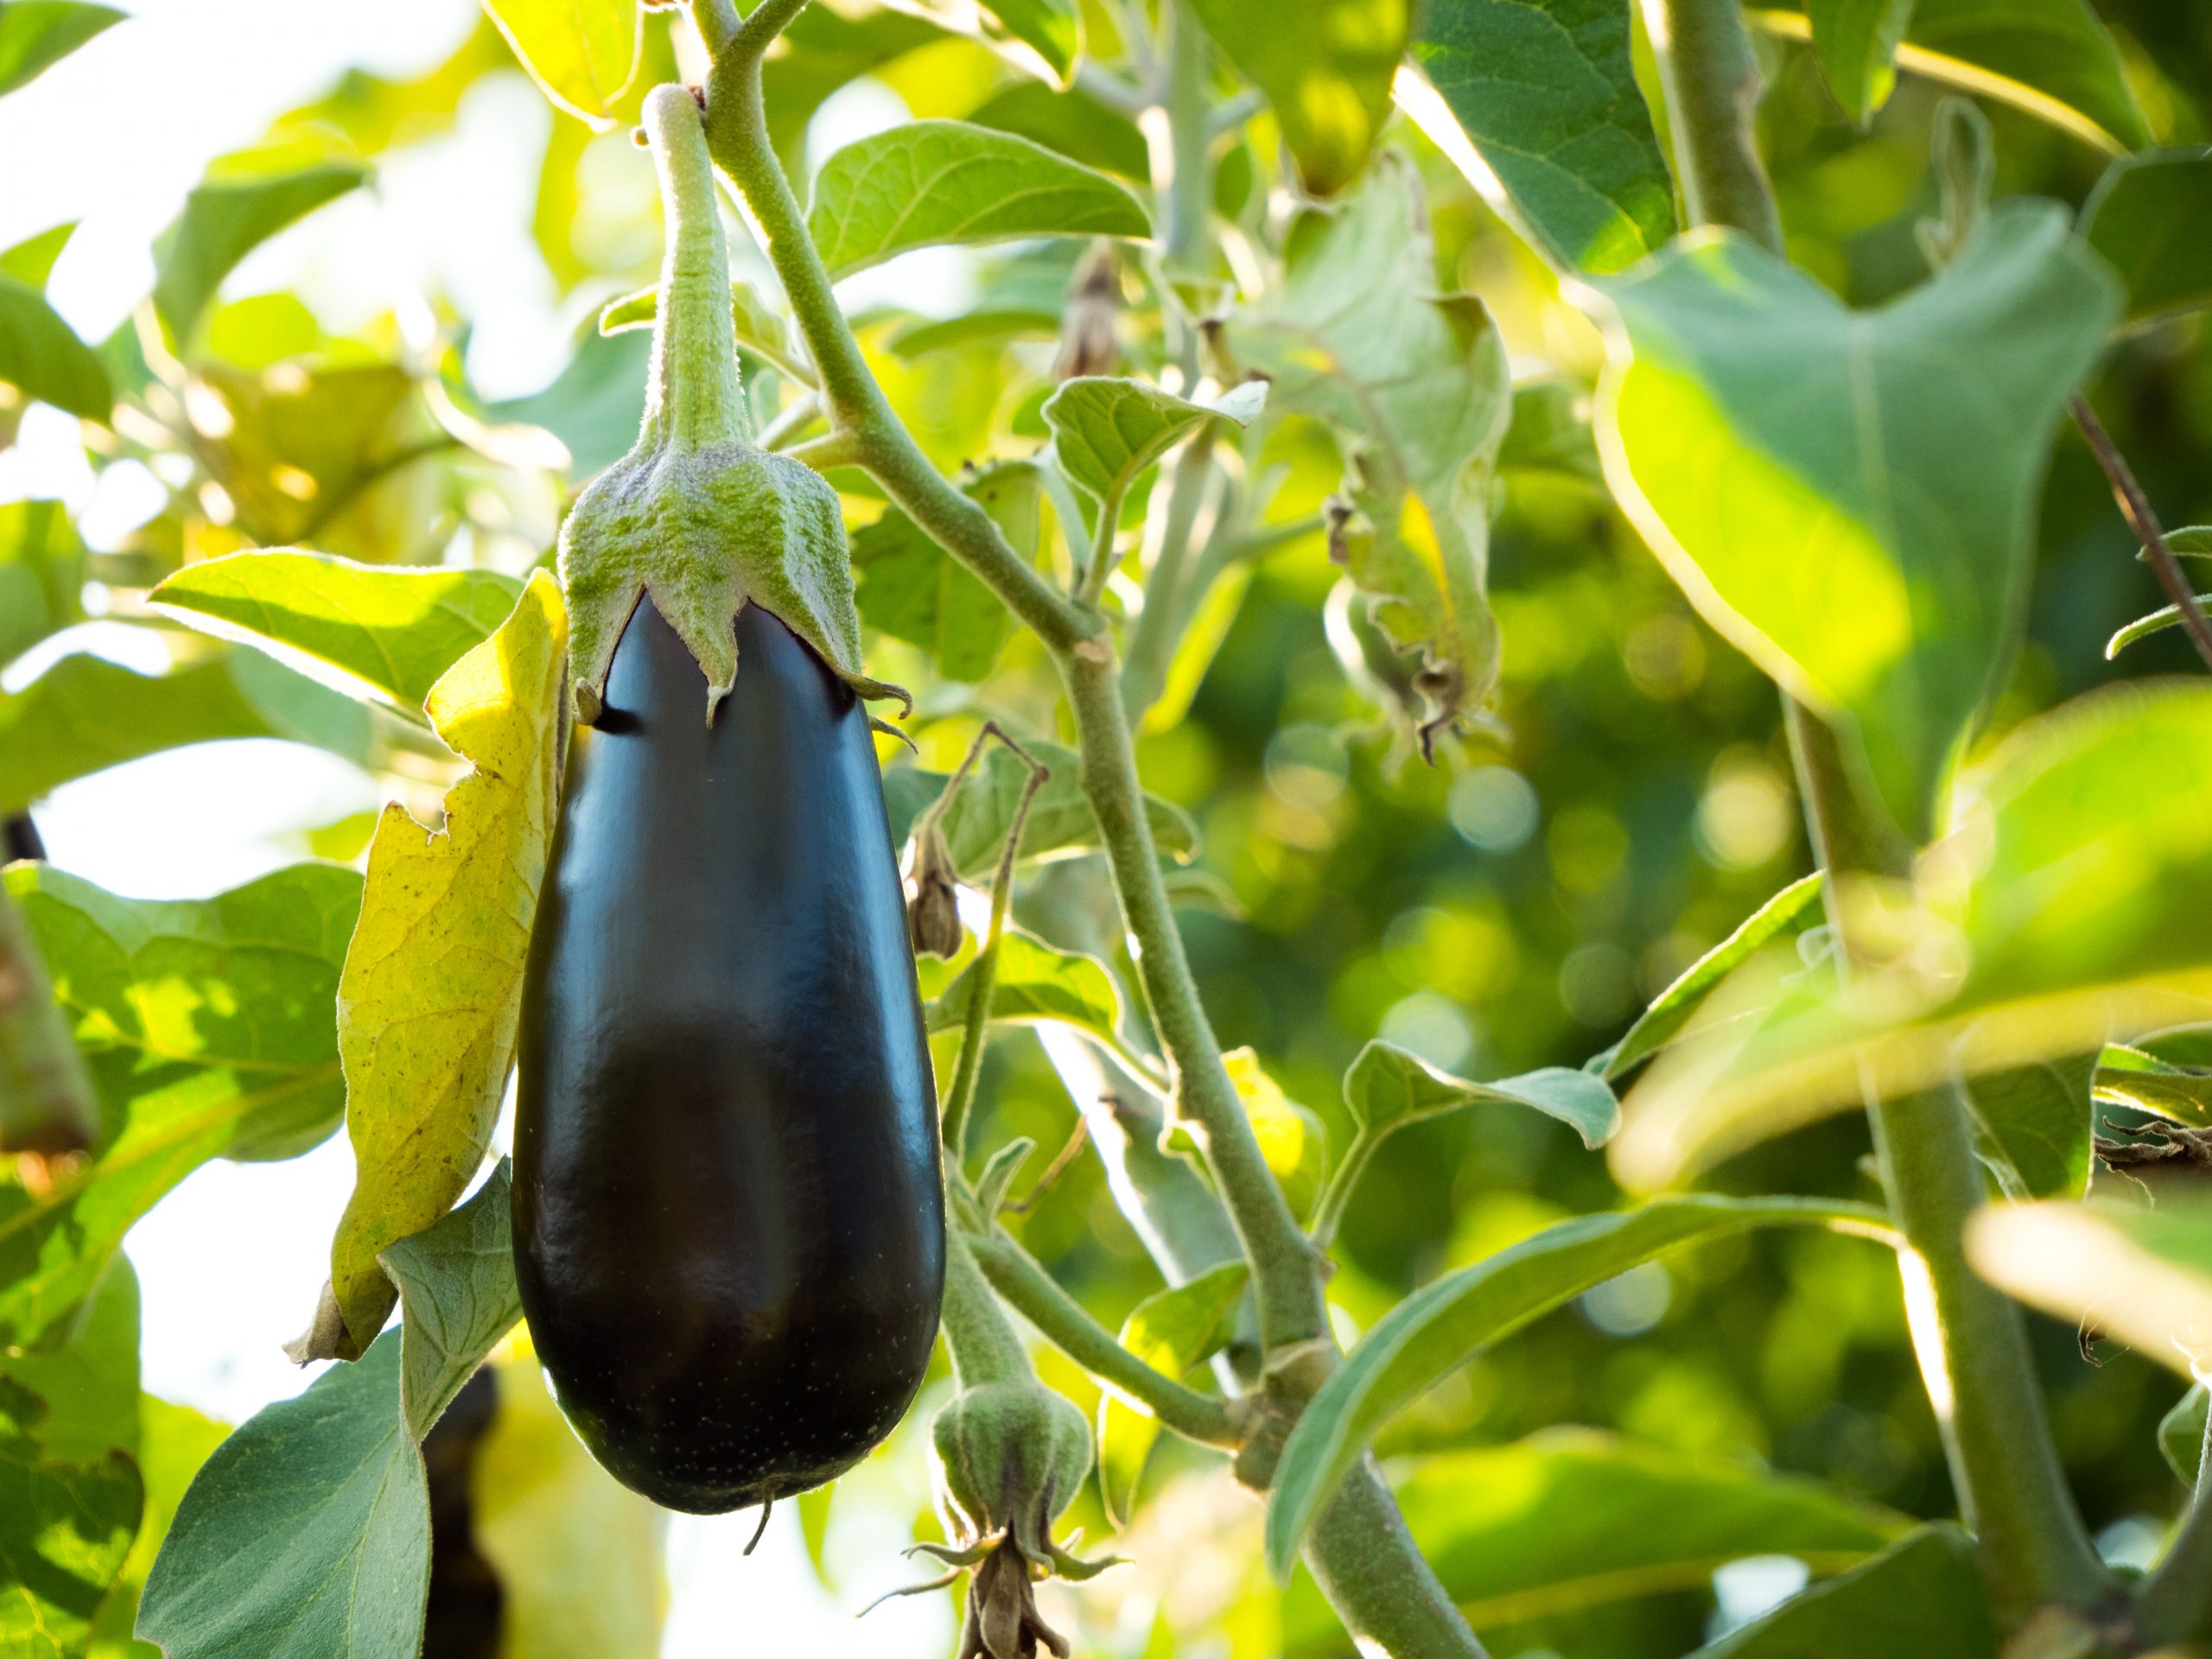 eggplant on a tree